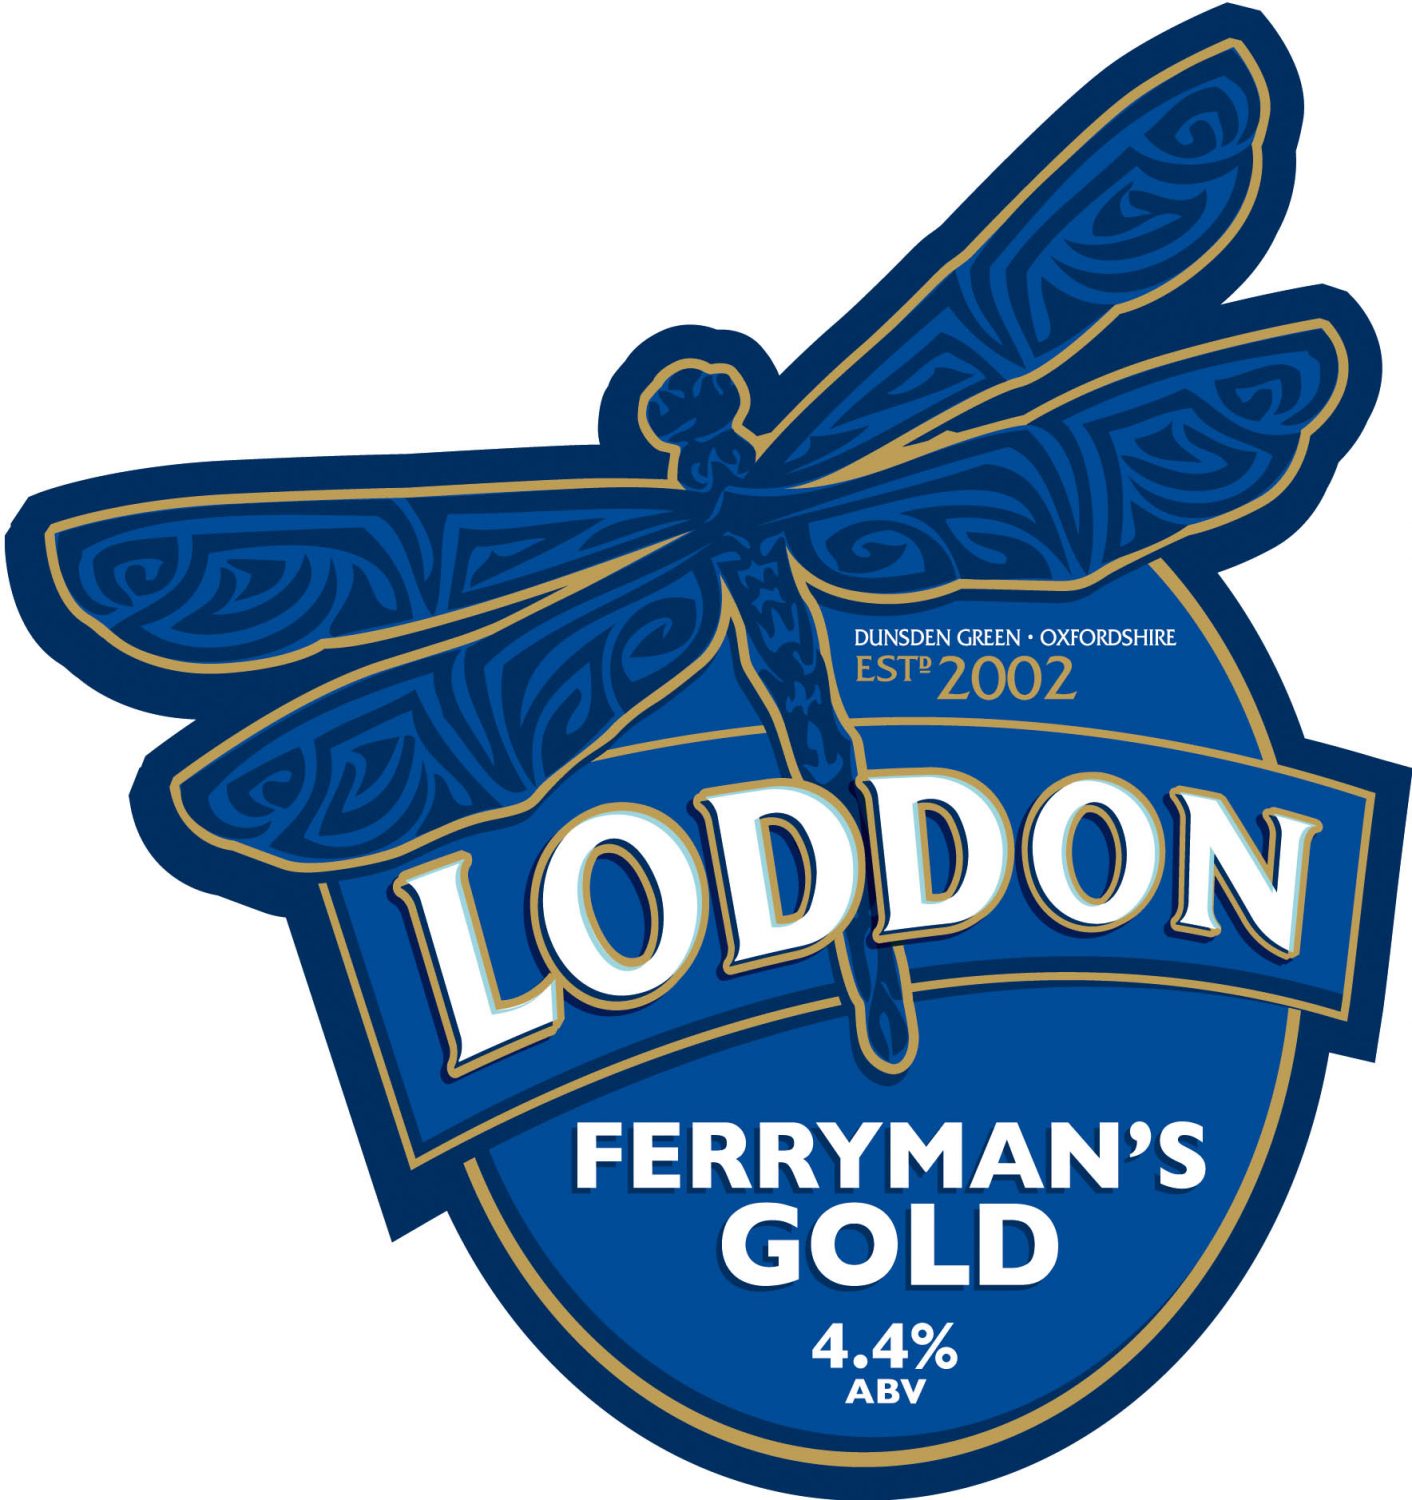 Loddon Brewery Ferryman's Gold